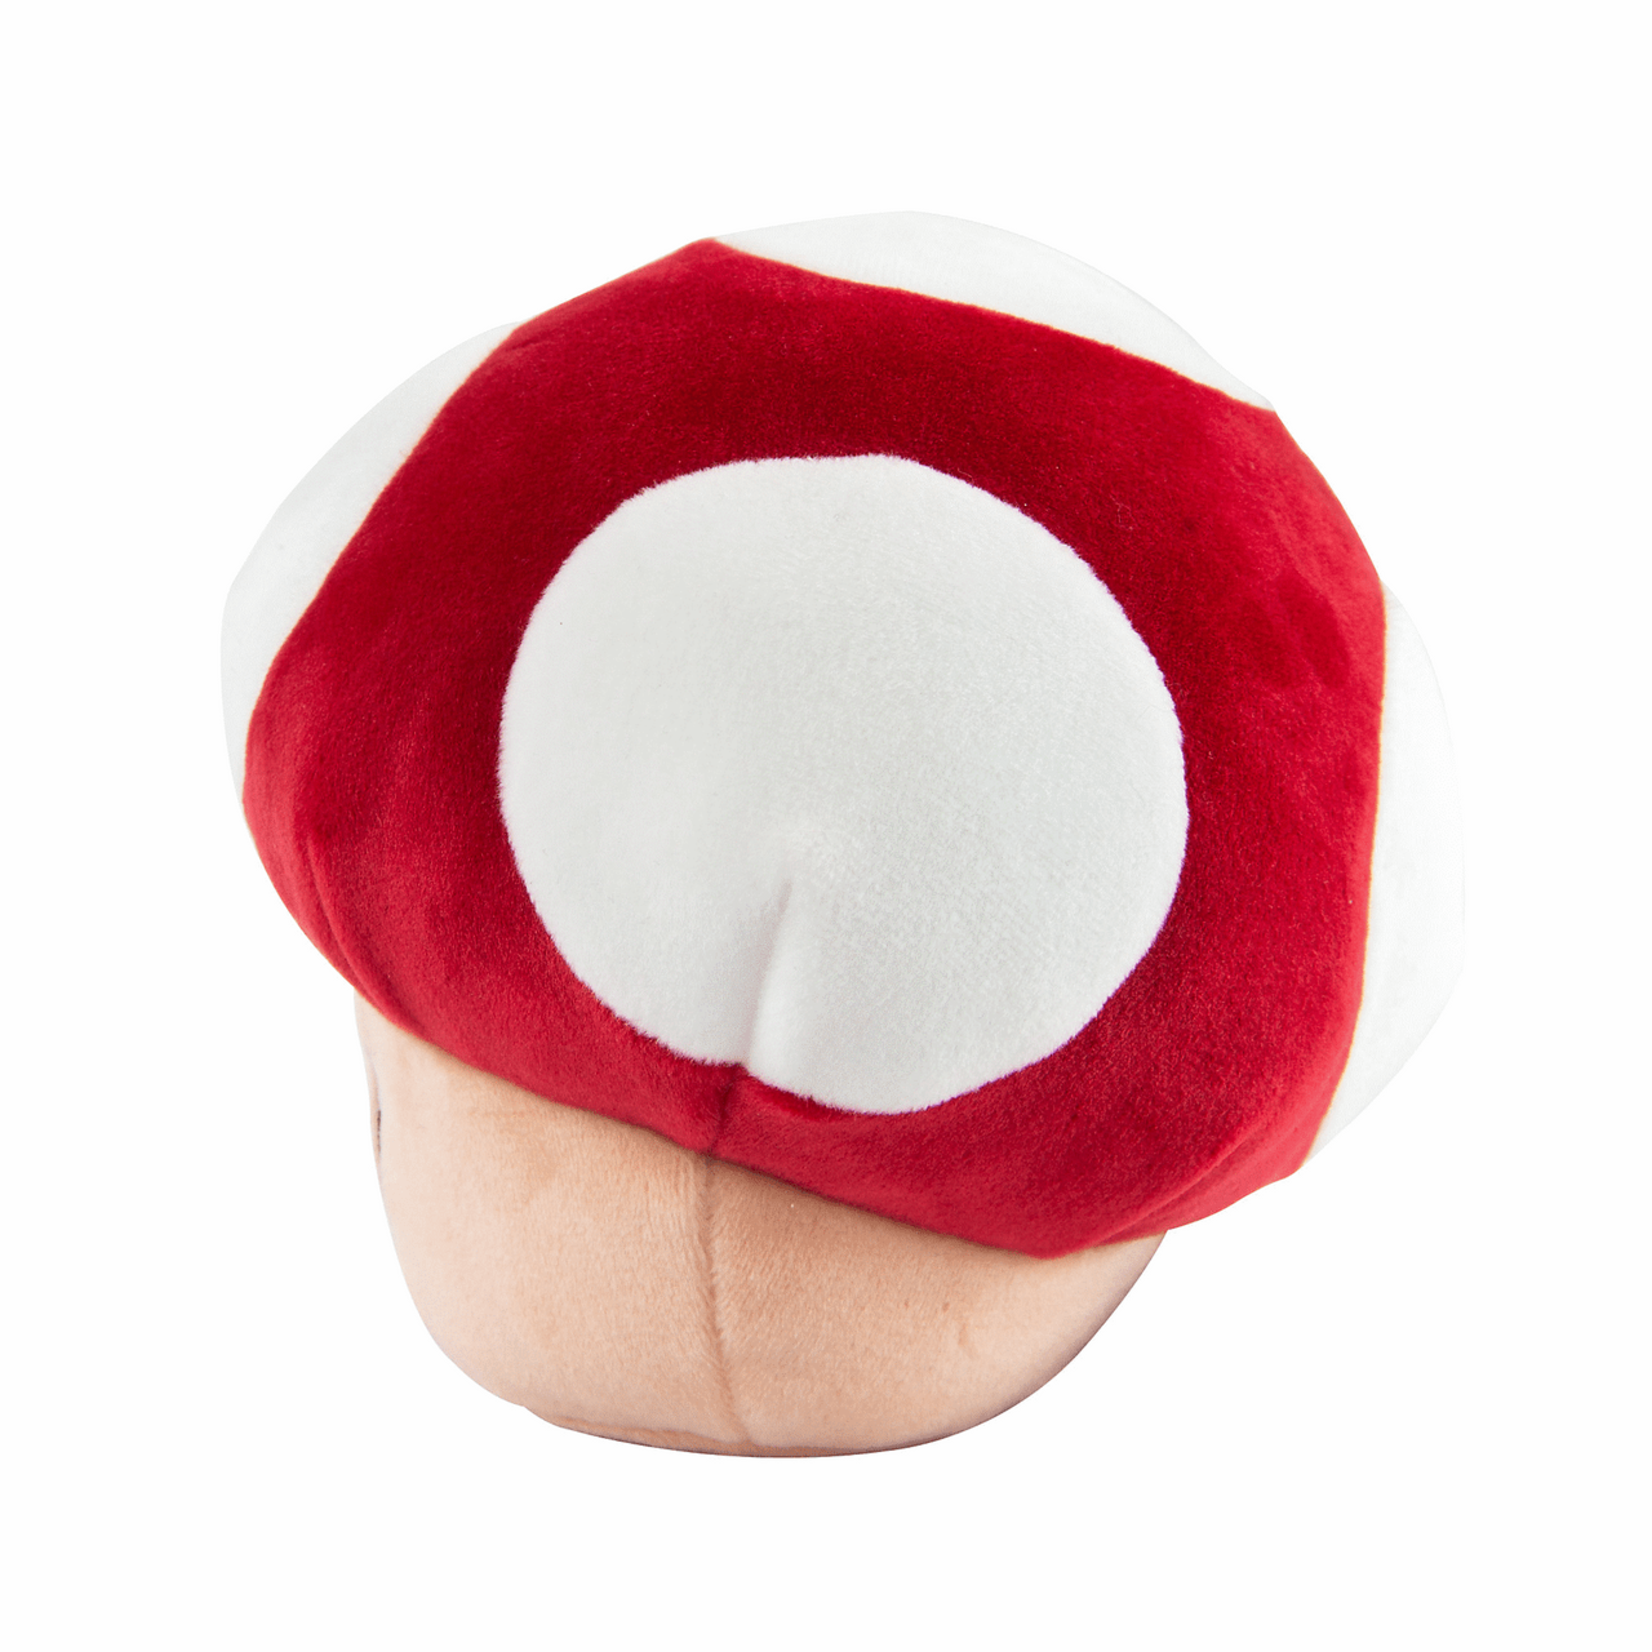 Club Mocchi-Mocchi- Mario™ Super Mushroom Junior Plush T12701